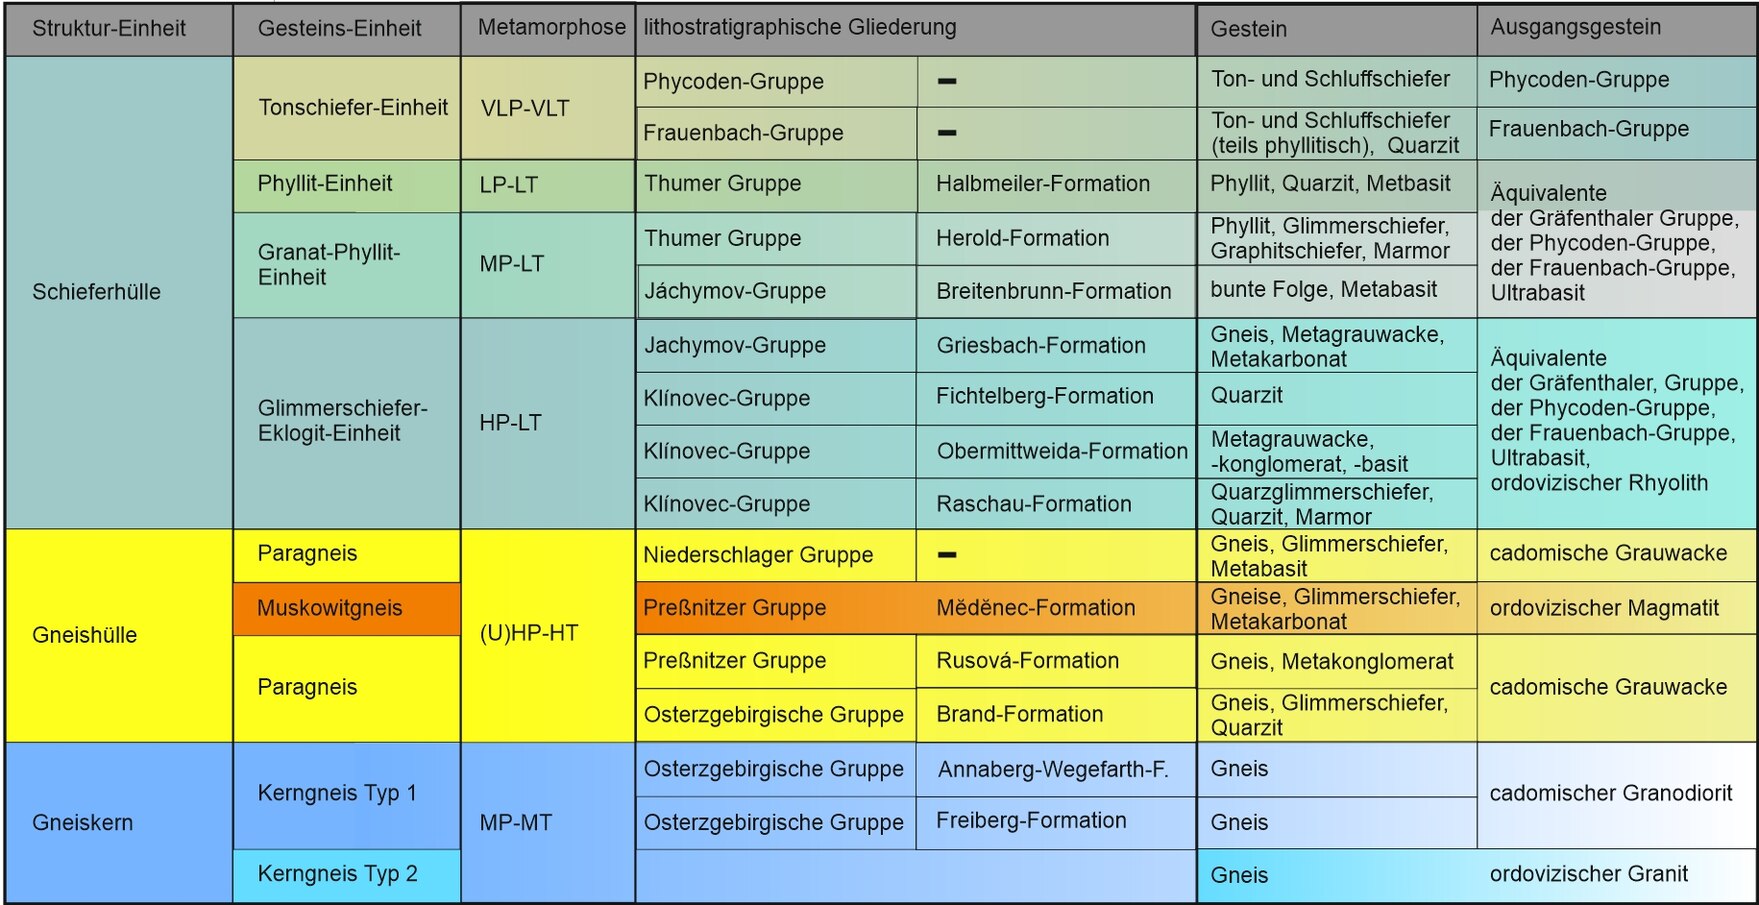 Tabelle mit einer Gegenüberstellung der Gliederung von Gesteinen nach lithostratigraphischem und mobilistischem Konzept.